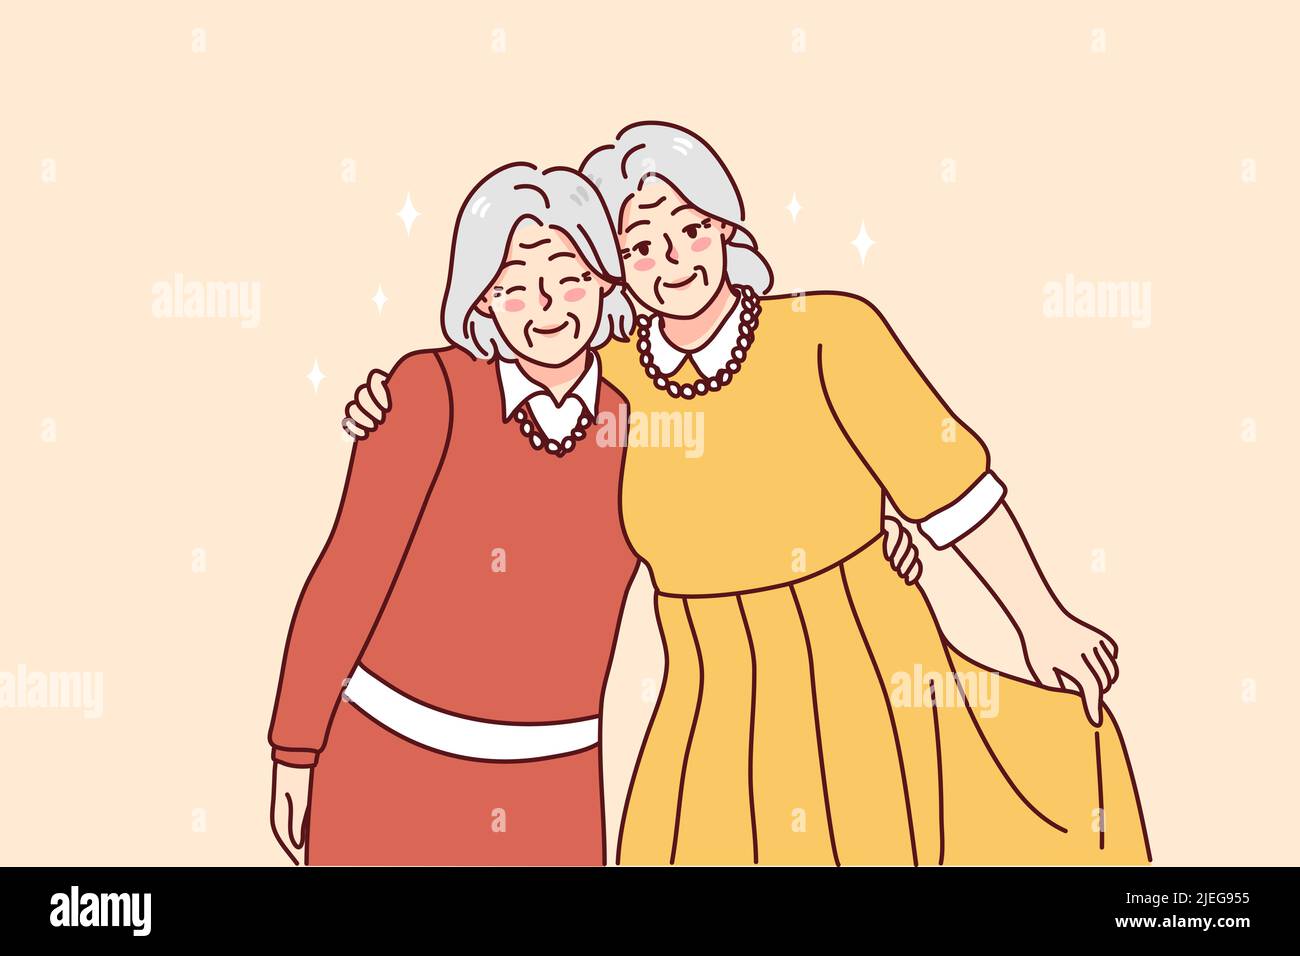 Les femmes mûres et grisantes qui s'embrasent en profitant d'une amitié permanente. Les grands-mères âgées souriantes embrassent l'unité et l'amour du spectacle. Concept de vieillissement. Illustration vectorielle. Illustration de Vecteur